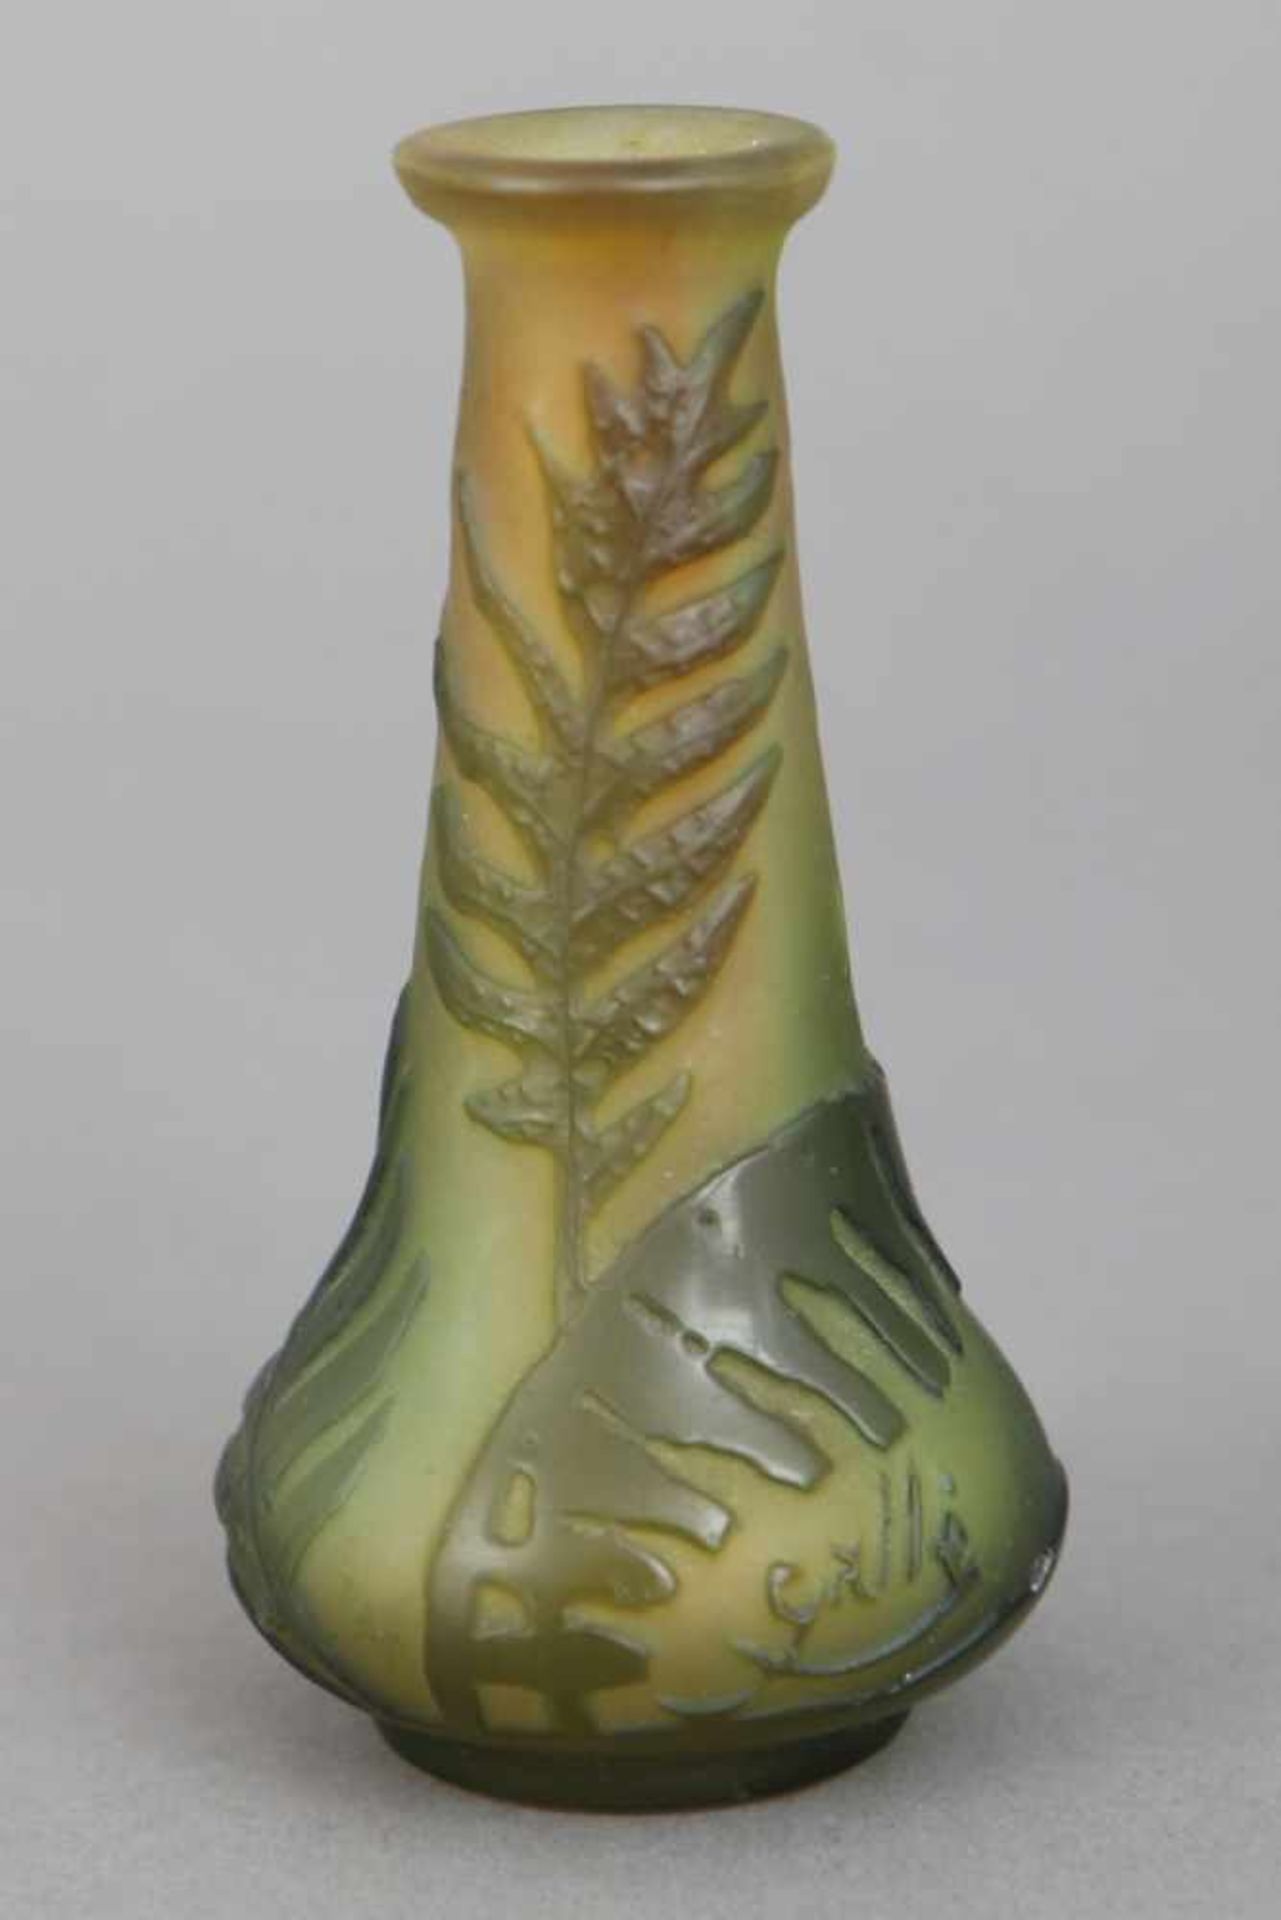 EMILE GALLÉ Vasegrün-gelbes Glas, dunkelgrün überfangen, Wandung umlaufend mit geschnittenem